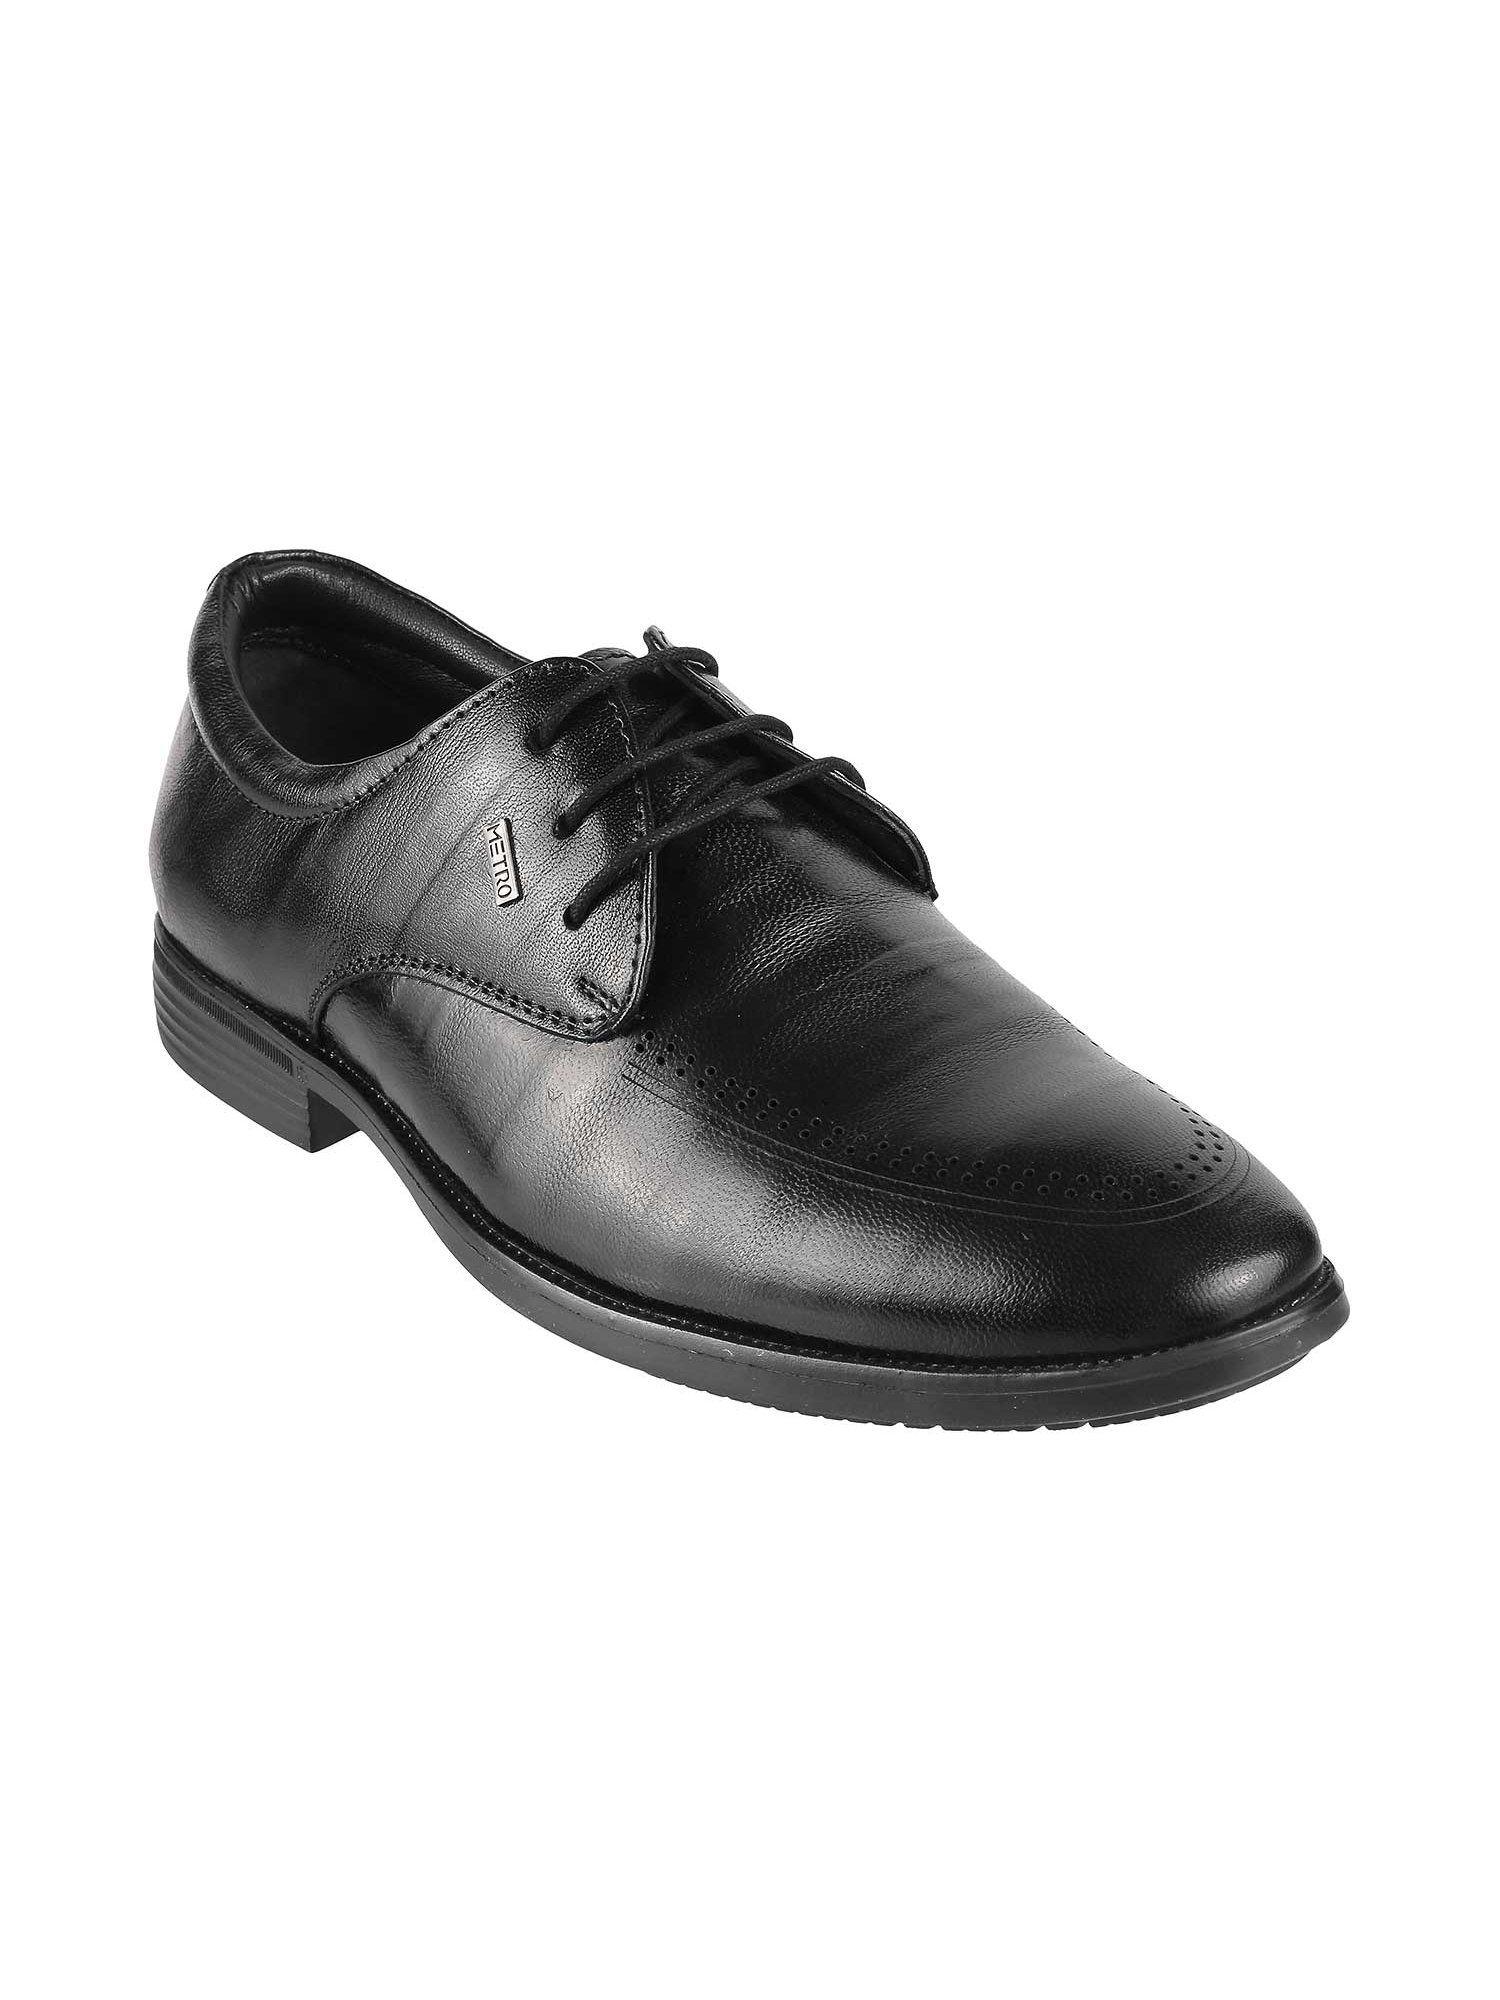 mens black formal lace-ups shoesmetro plain black lace-ups shoes